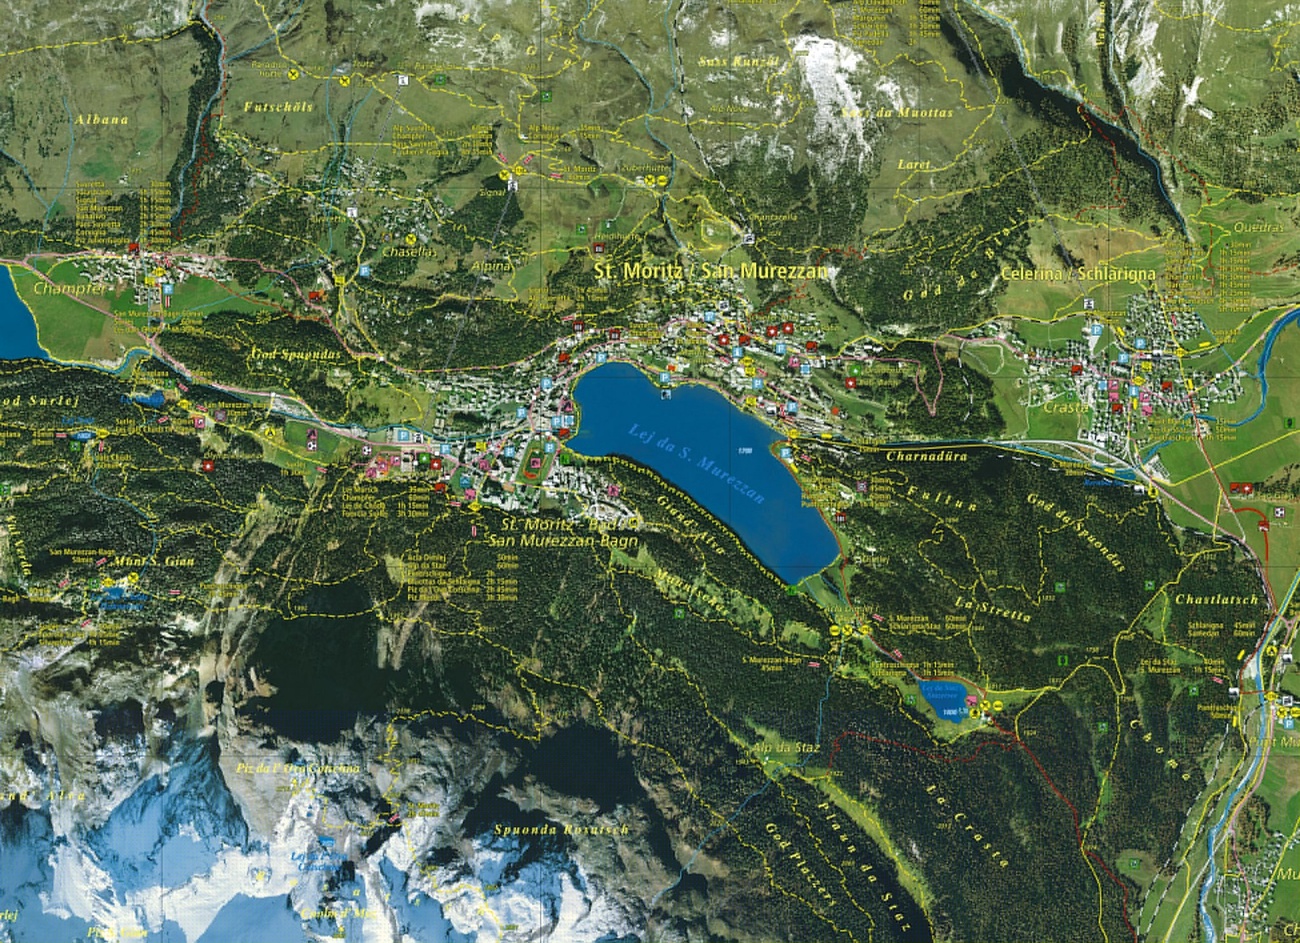 Carte de géographie numérique montrant la région de Saint-Moritz